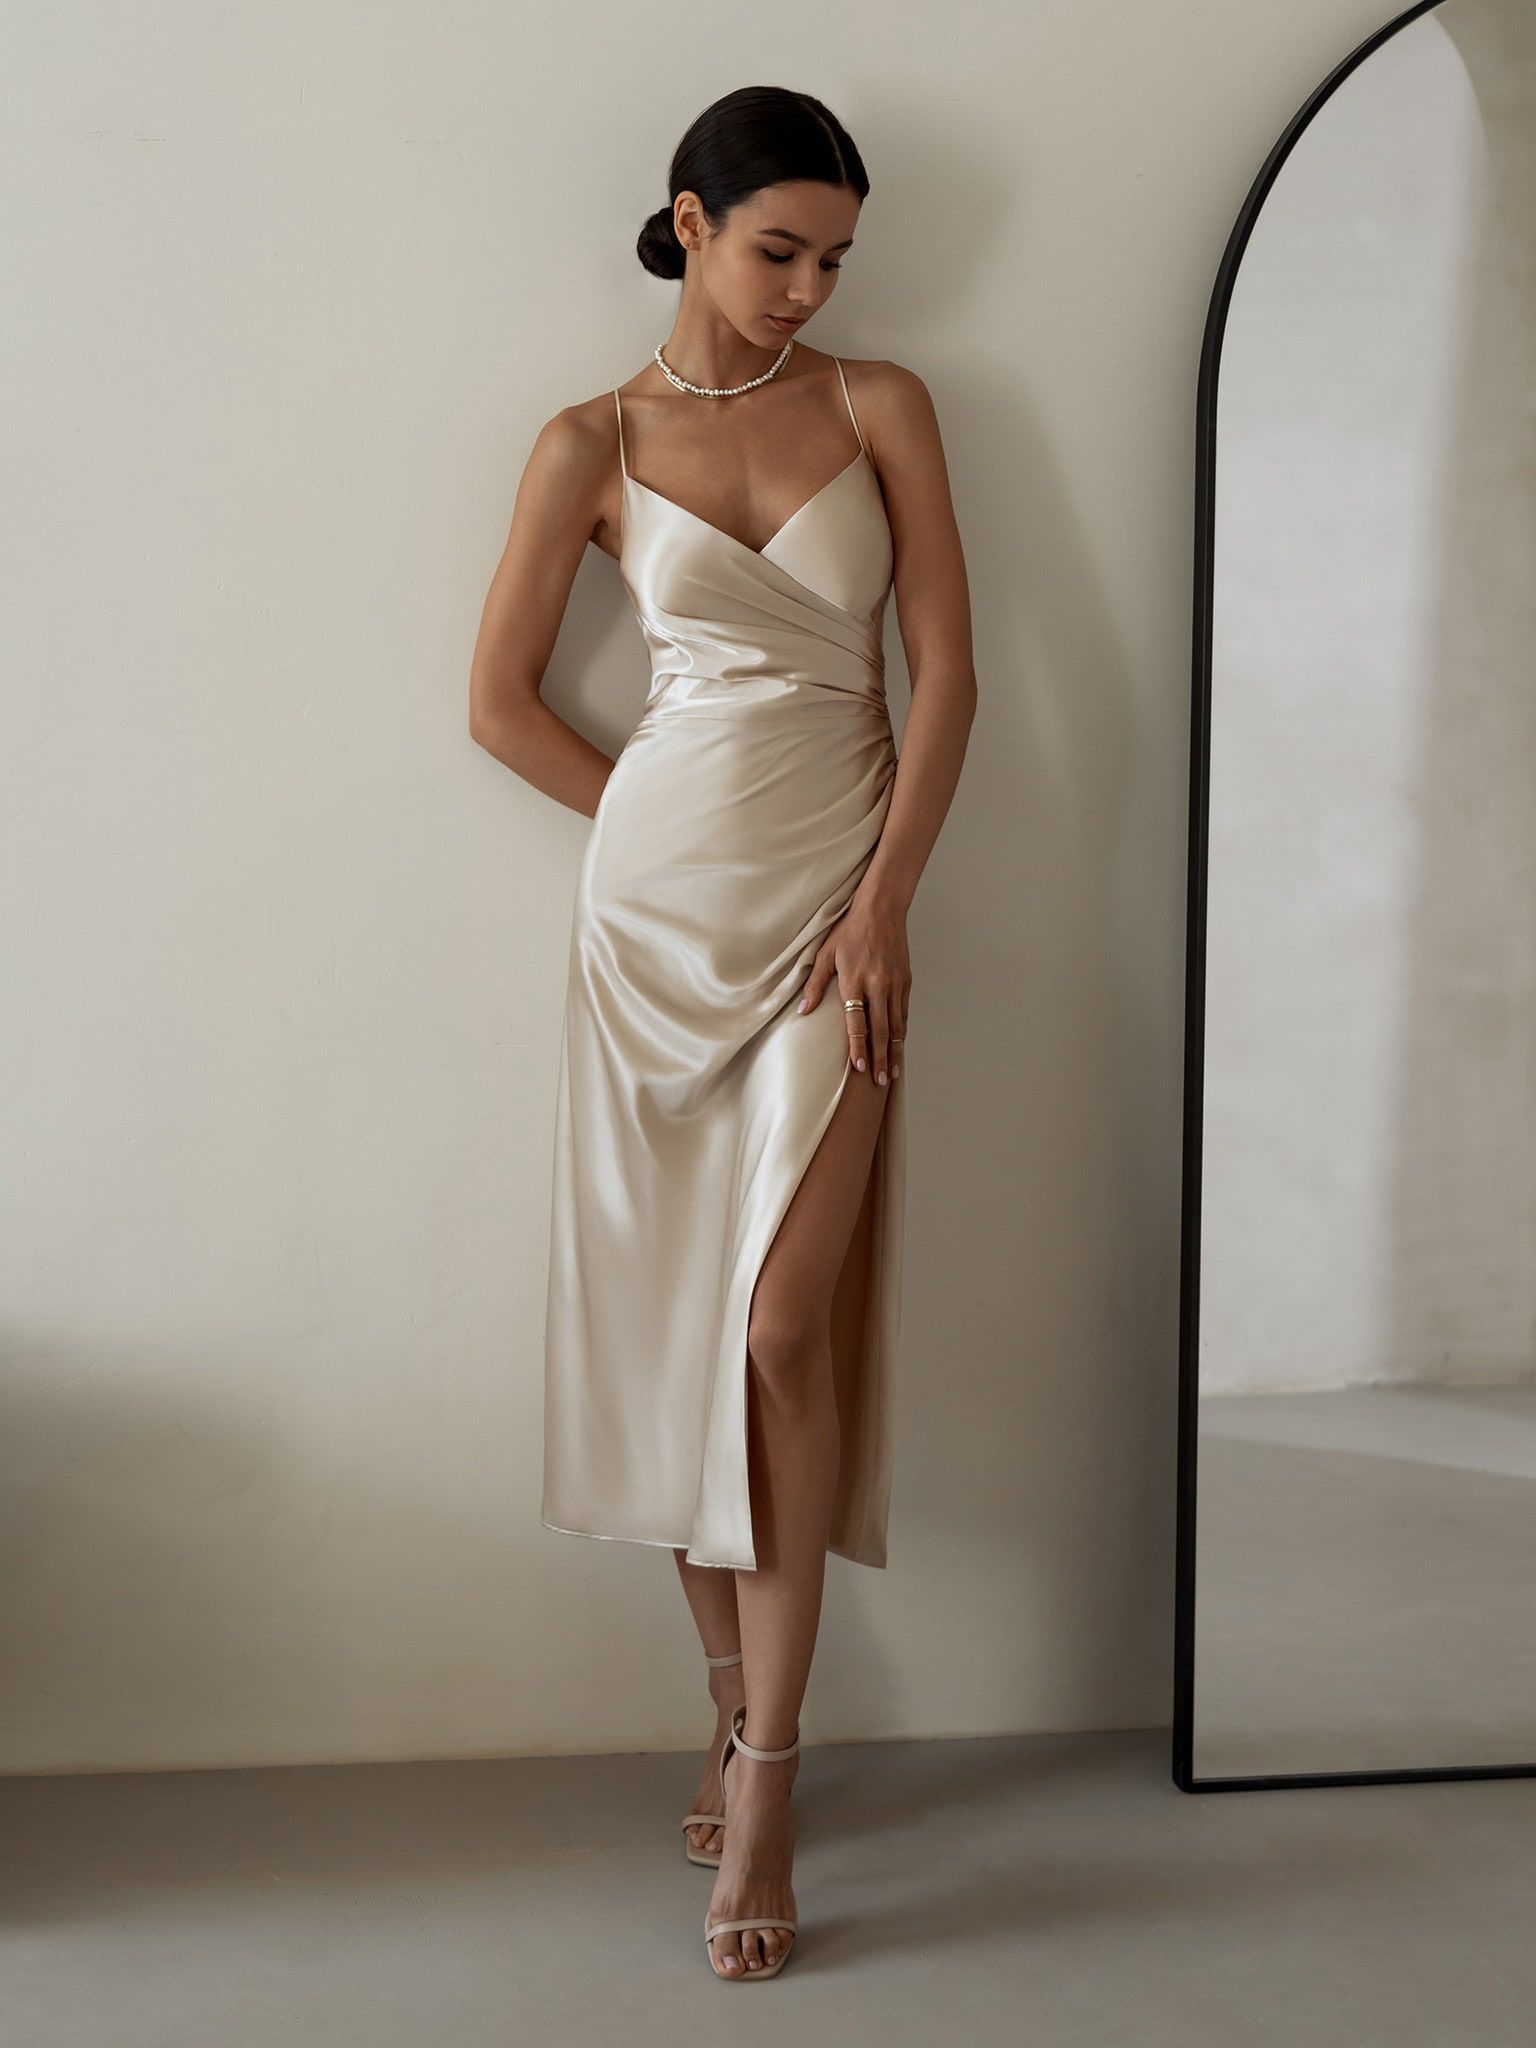 Effortless Elegance: Embracing Slit Dresses for Every Occasion